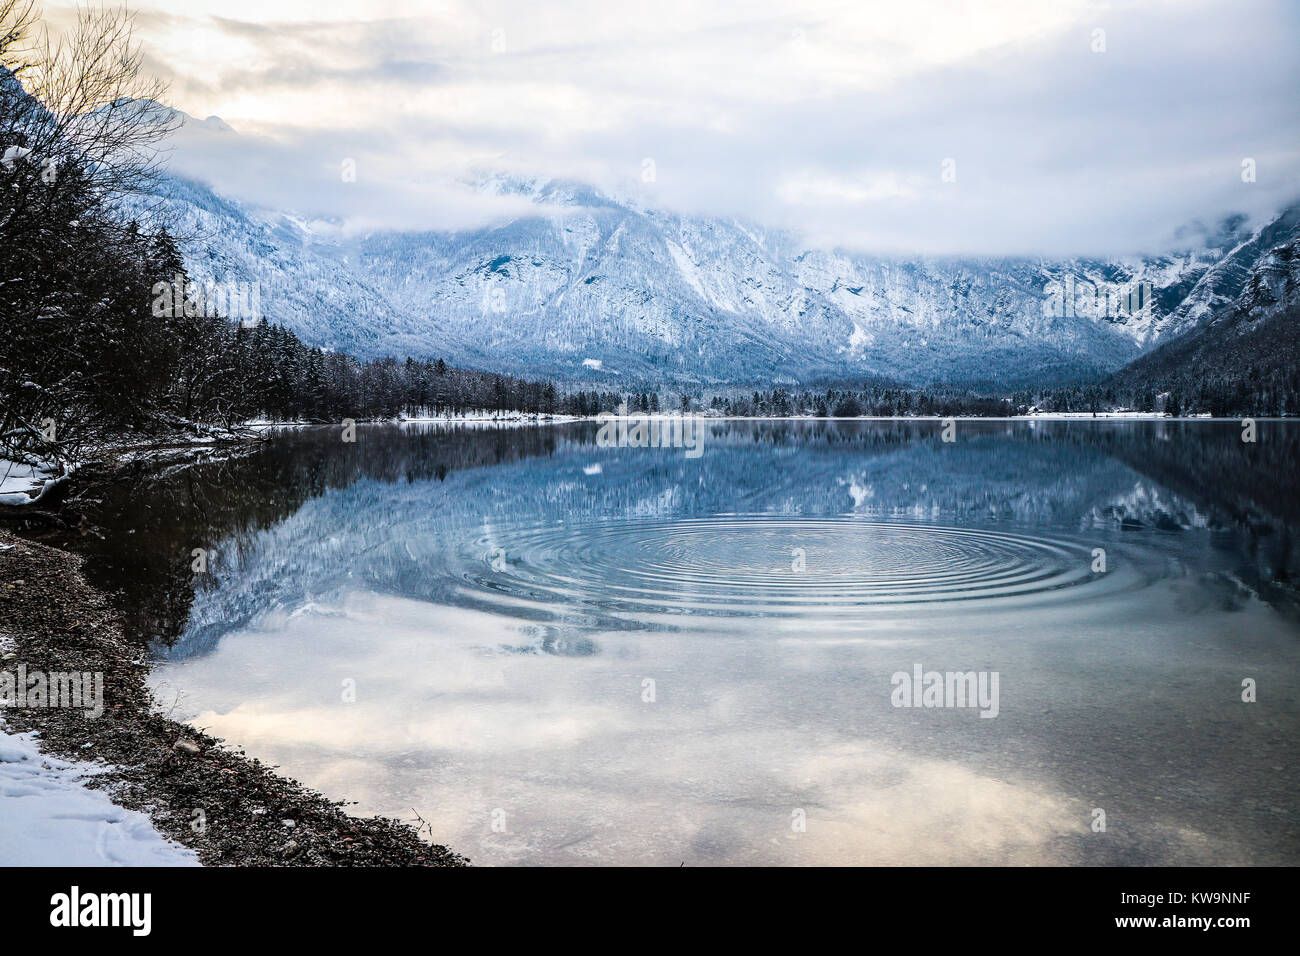 Die herrliche Ruhe des Sees Bohinj (Slowenien), in diesem wunderbaren Bild aufgenommen, perfekt die Vorderseite einer Weihnachtskarte oder Postkarte zu schmücken. Stockfoto